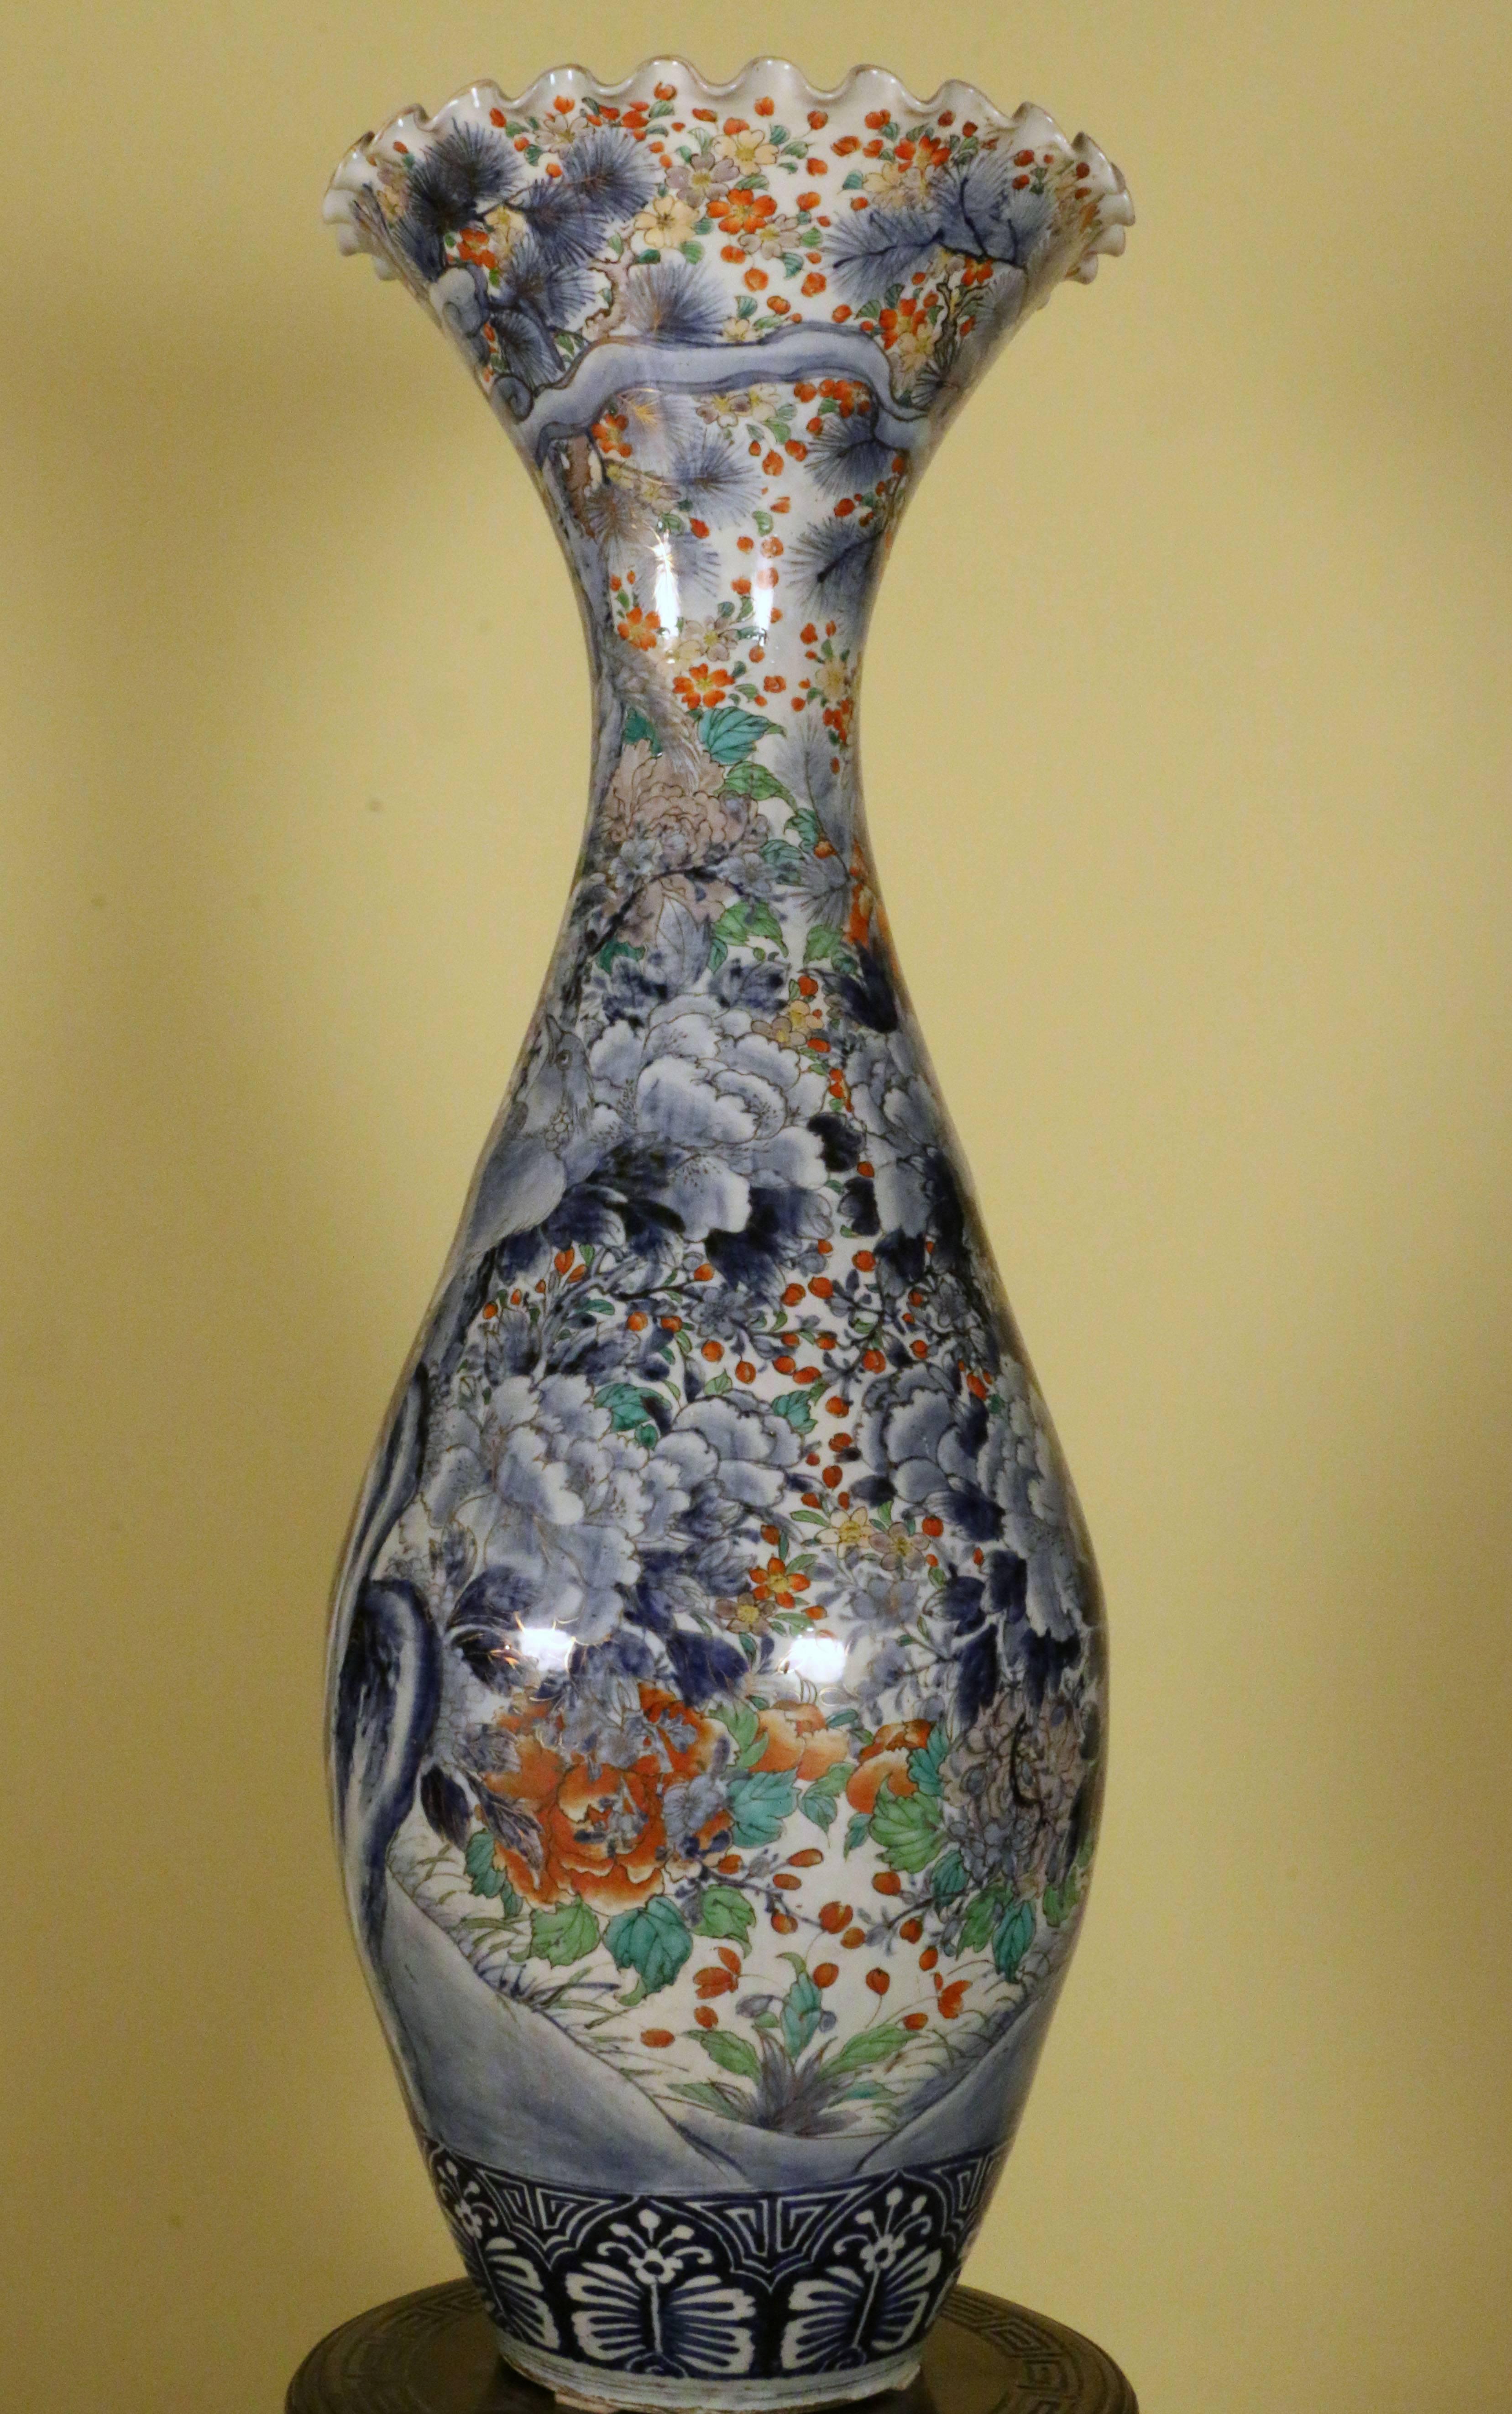 Diese Vase hat eine große dekorative Wirkung; der eiförmige Körper ist in polychromer Palette mit Vögeln in einer blühenden Landschaft bemalt, die auf einem alten Baumstamm zentriert ist. Die Verzierung ist üppig, aber gut durchdacht, mit zwei